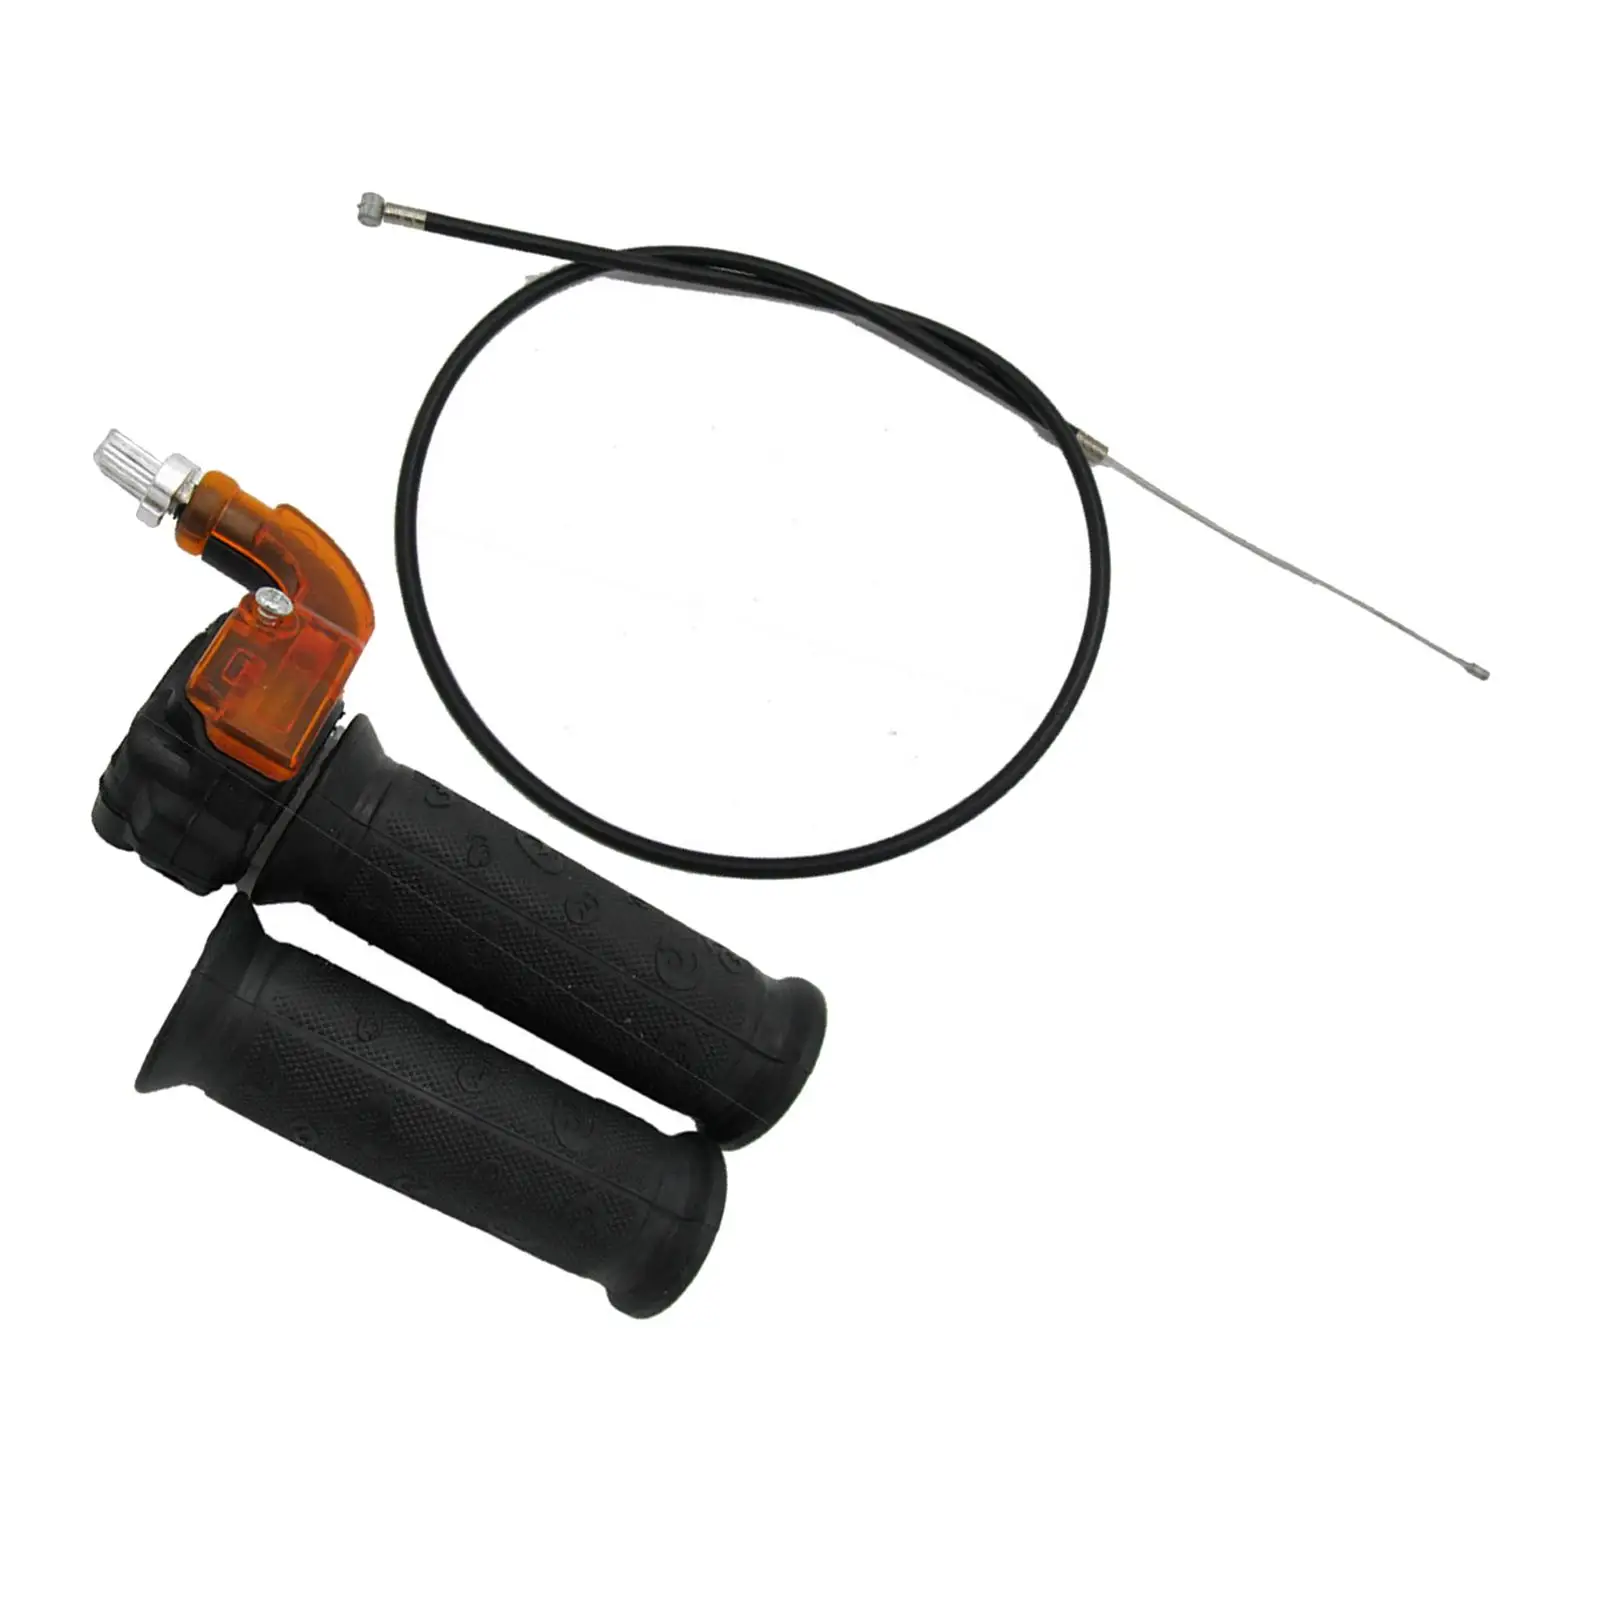 22mm Twist Throttle Cable Grip for 47cc 49cc Quad Pocket Durable